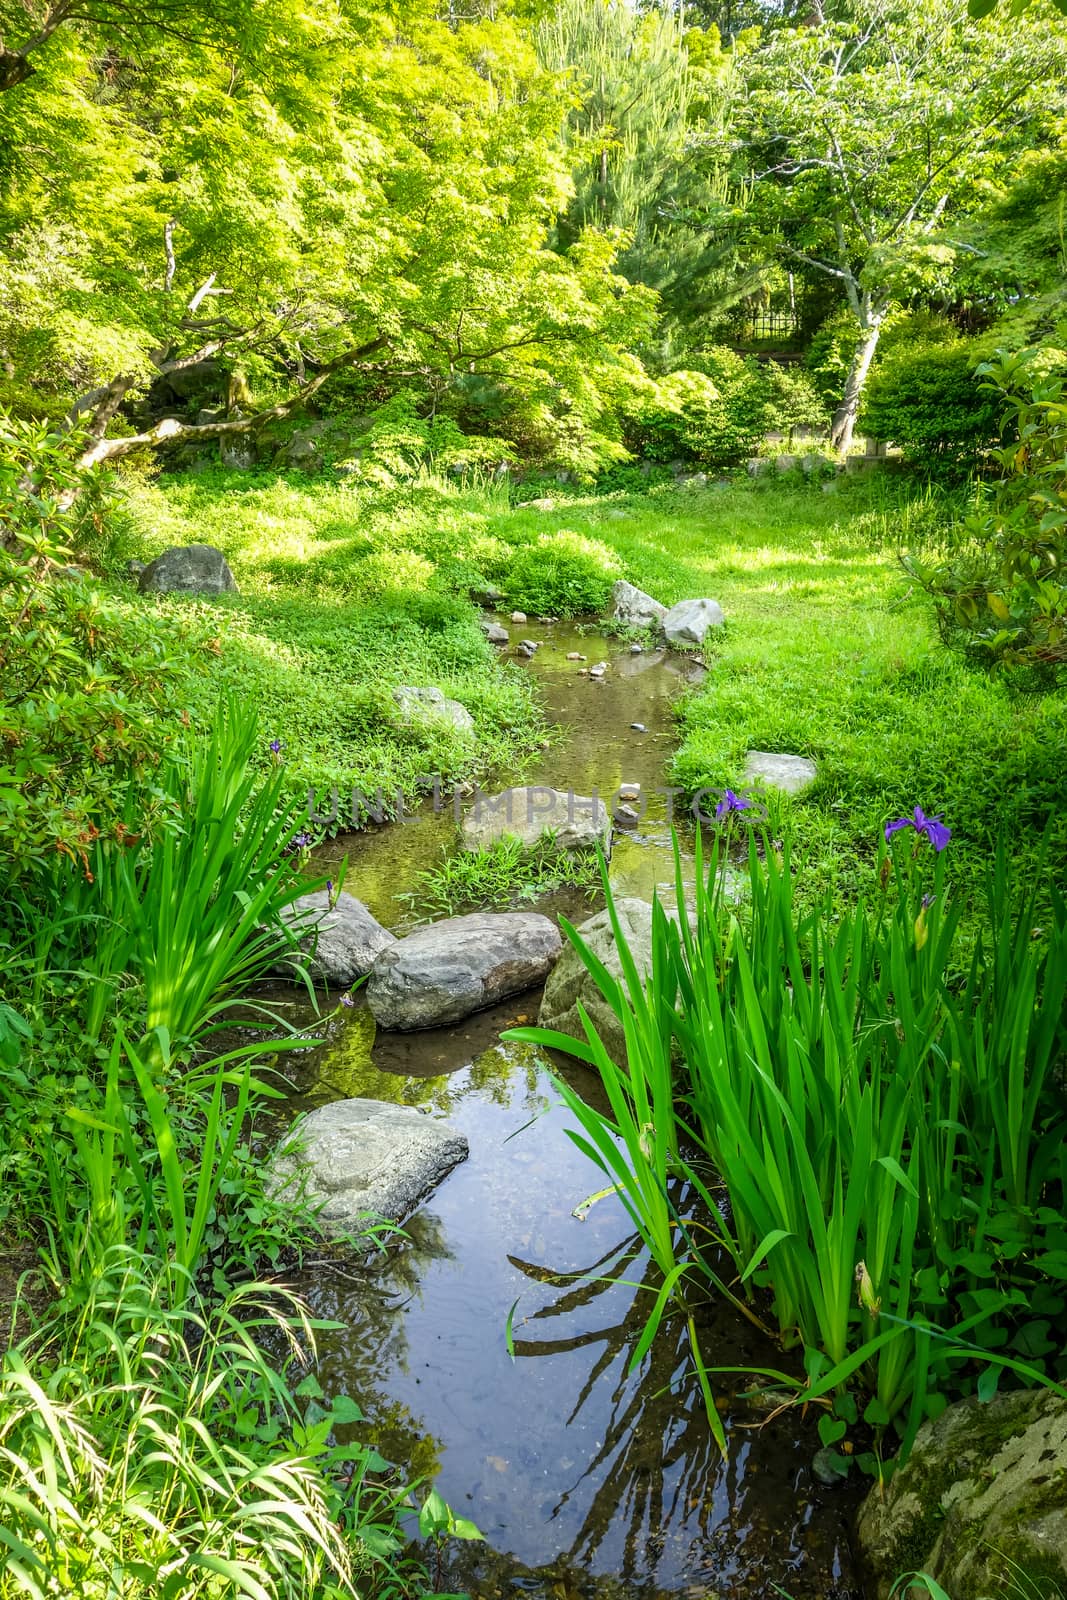 Maruyama japanese garden in Kyoto, Japan